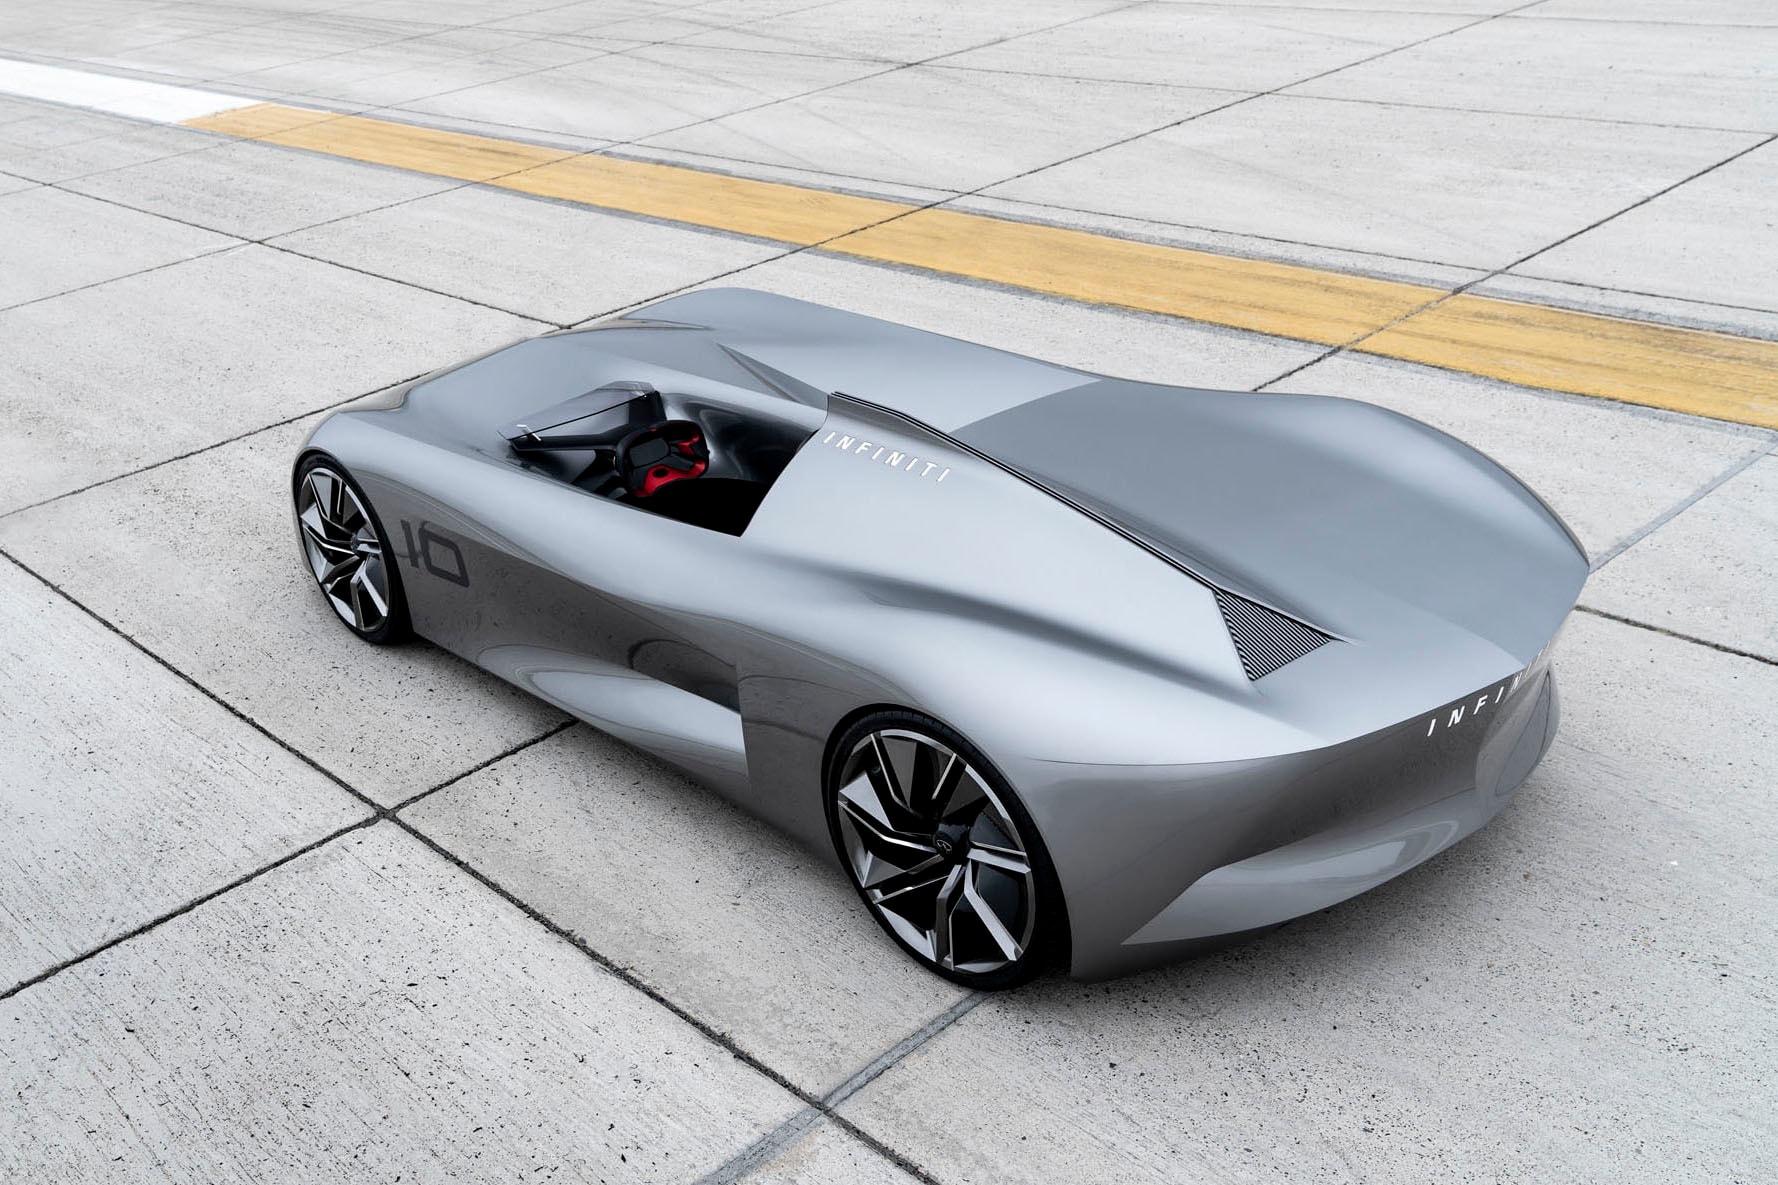 Infiniti prototype 10 concept car pebble beach tour delegance automotive show california august 2018 debut race track model